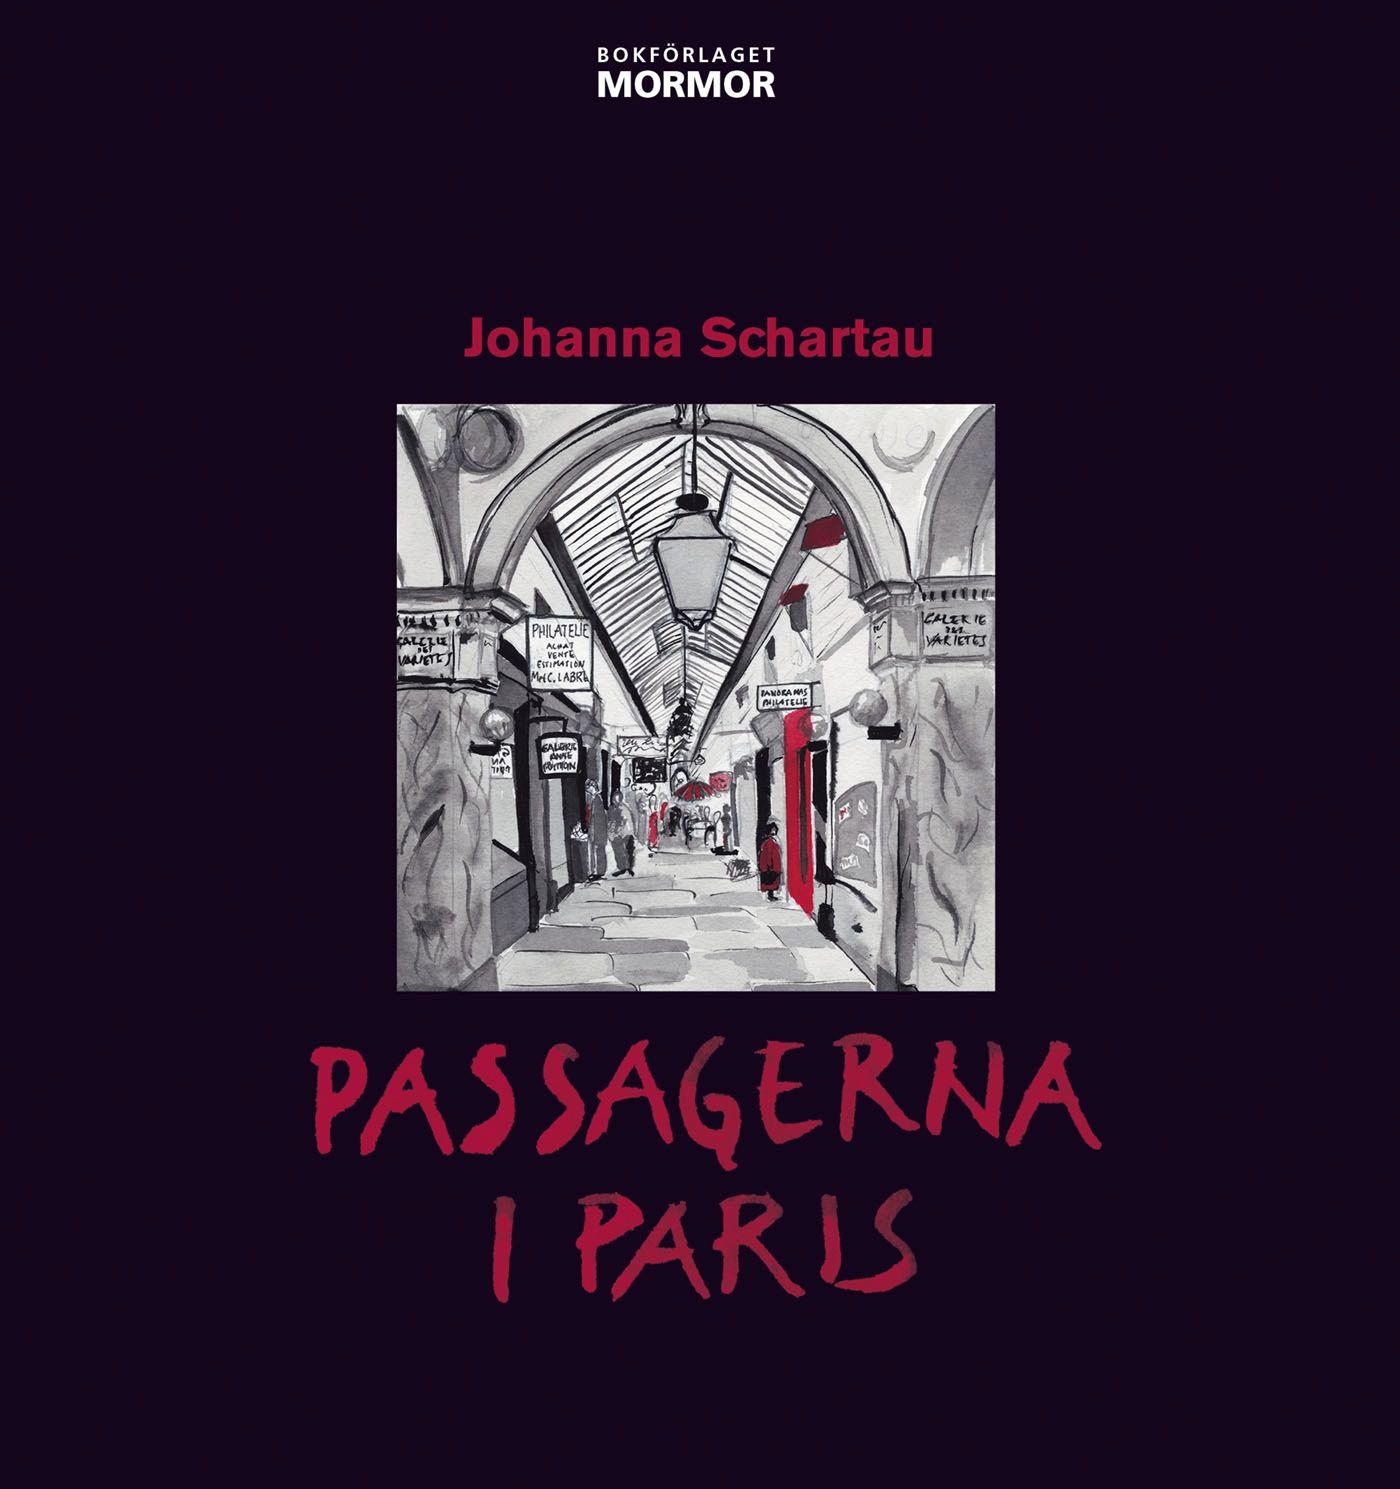 Passagerna i Paris, eBook by Johanna Schartau